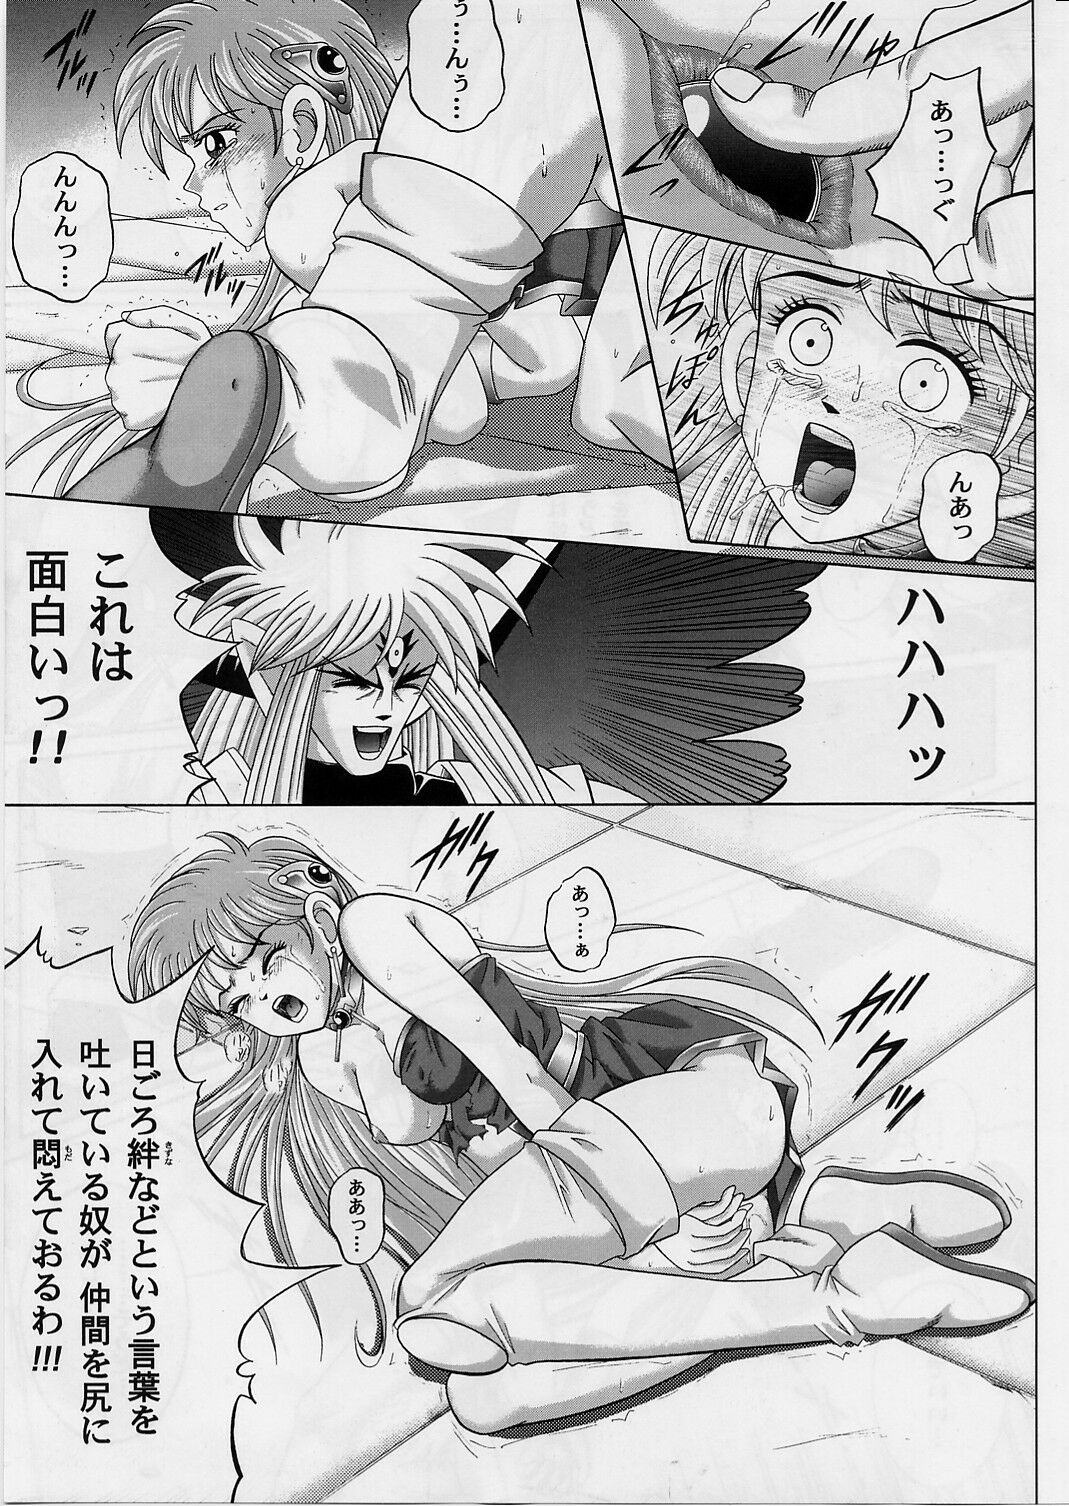 [Cyclone (Izumi, Reizei)] DIME ALLIANCE 2 (Dragon Quest Dai no Daibouken) page 18 full